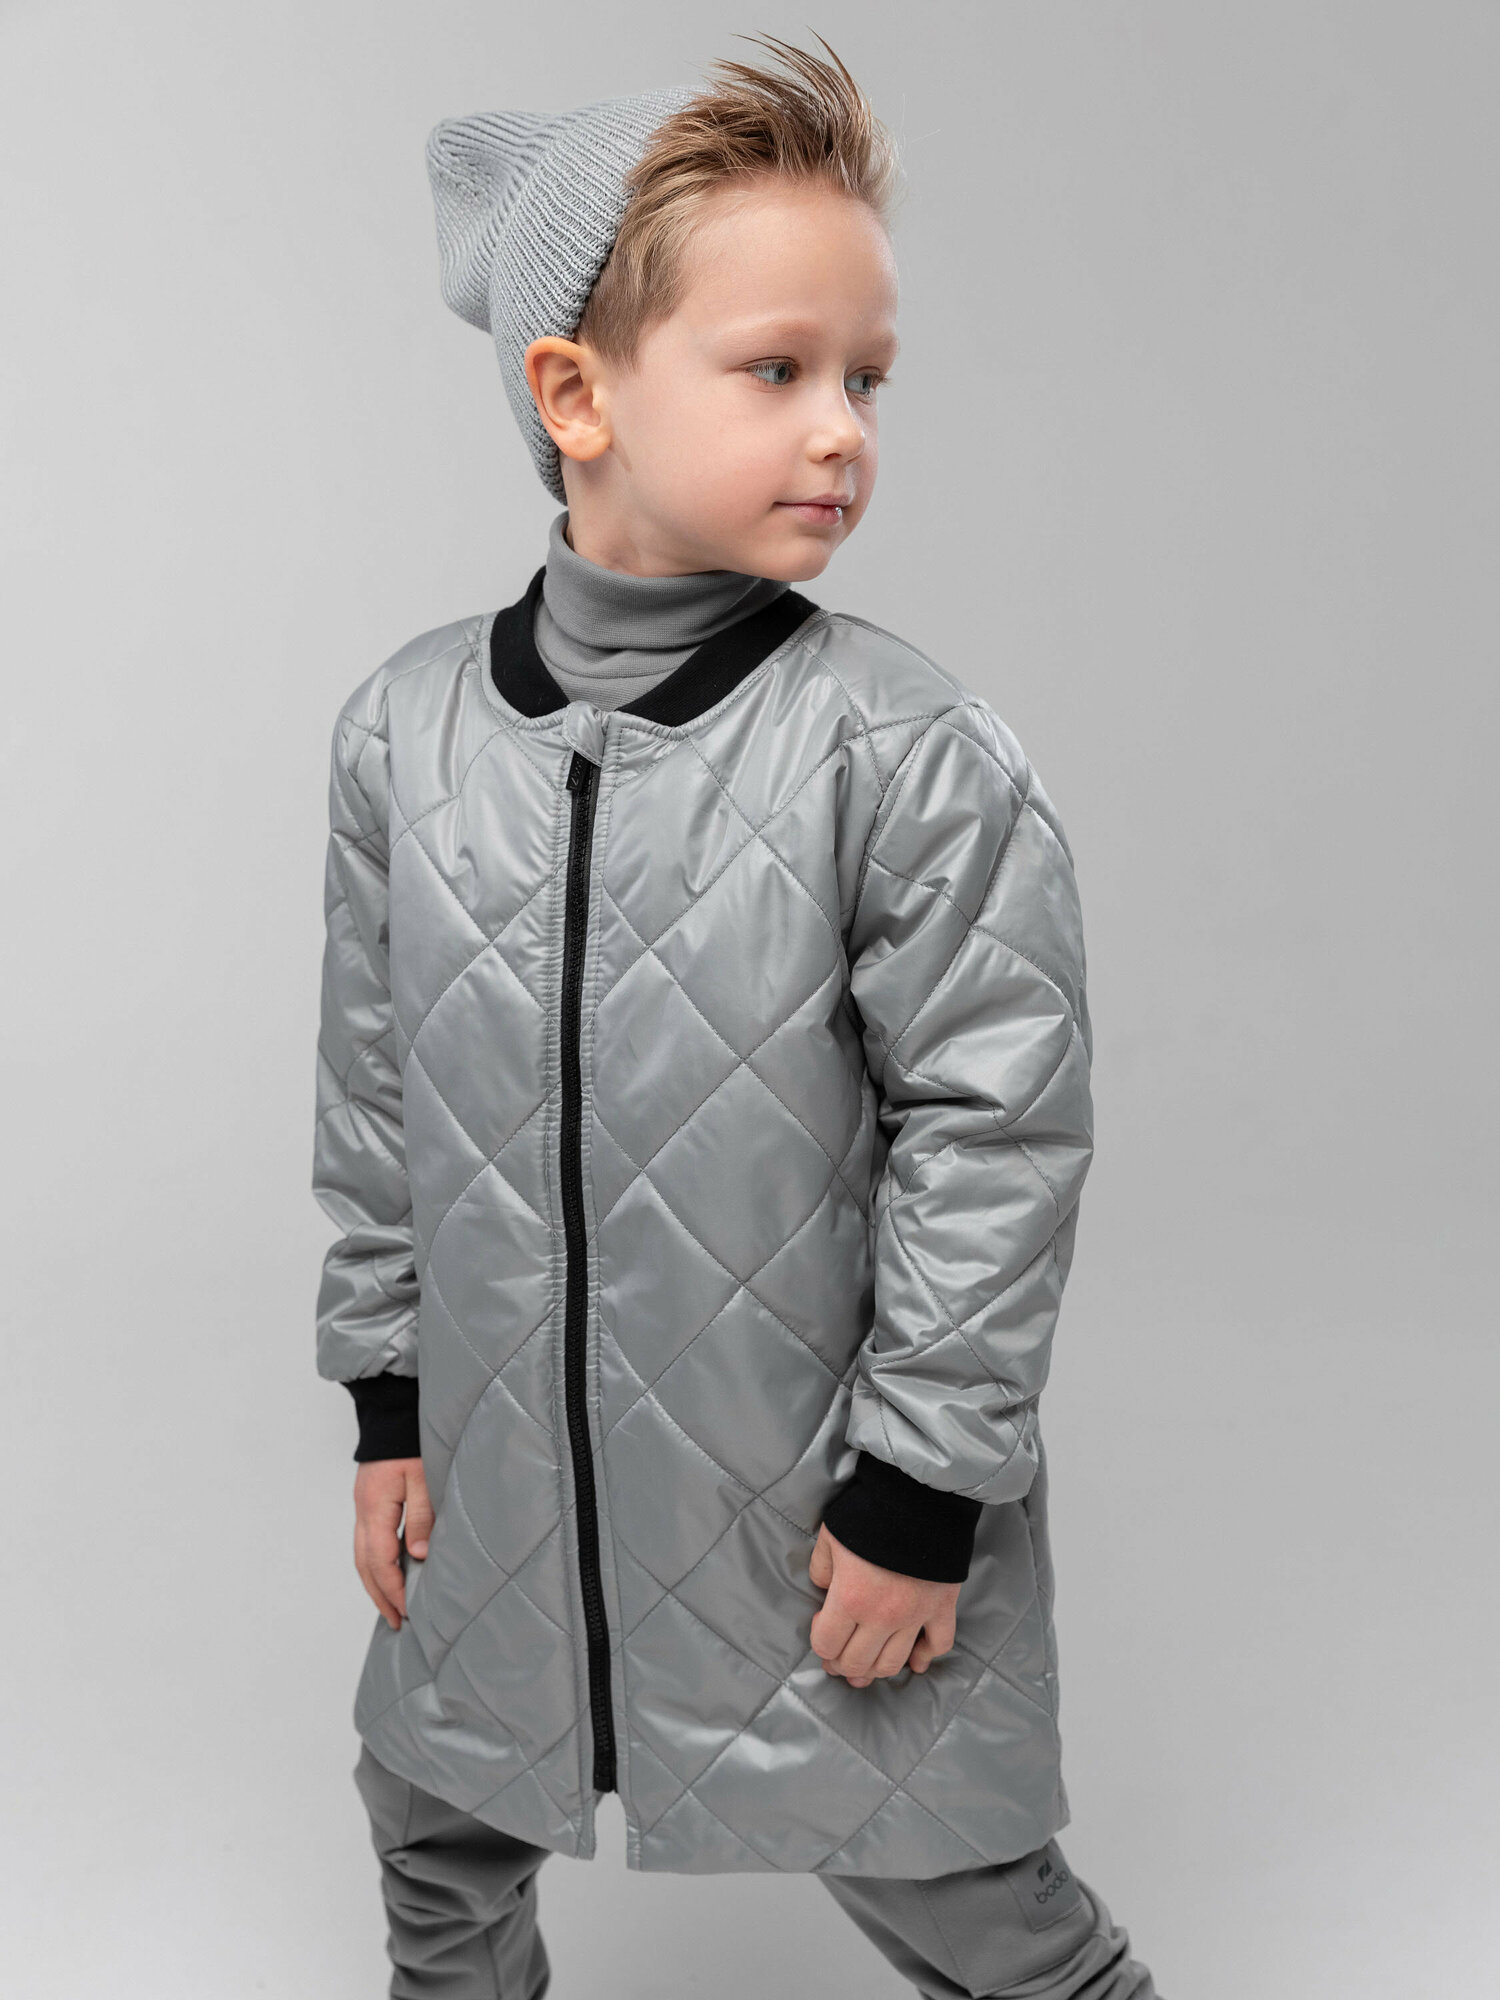 Куртка BODO, арт. 32-61U, цвет серый, Размер 122-128